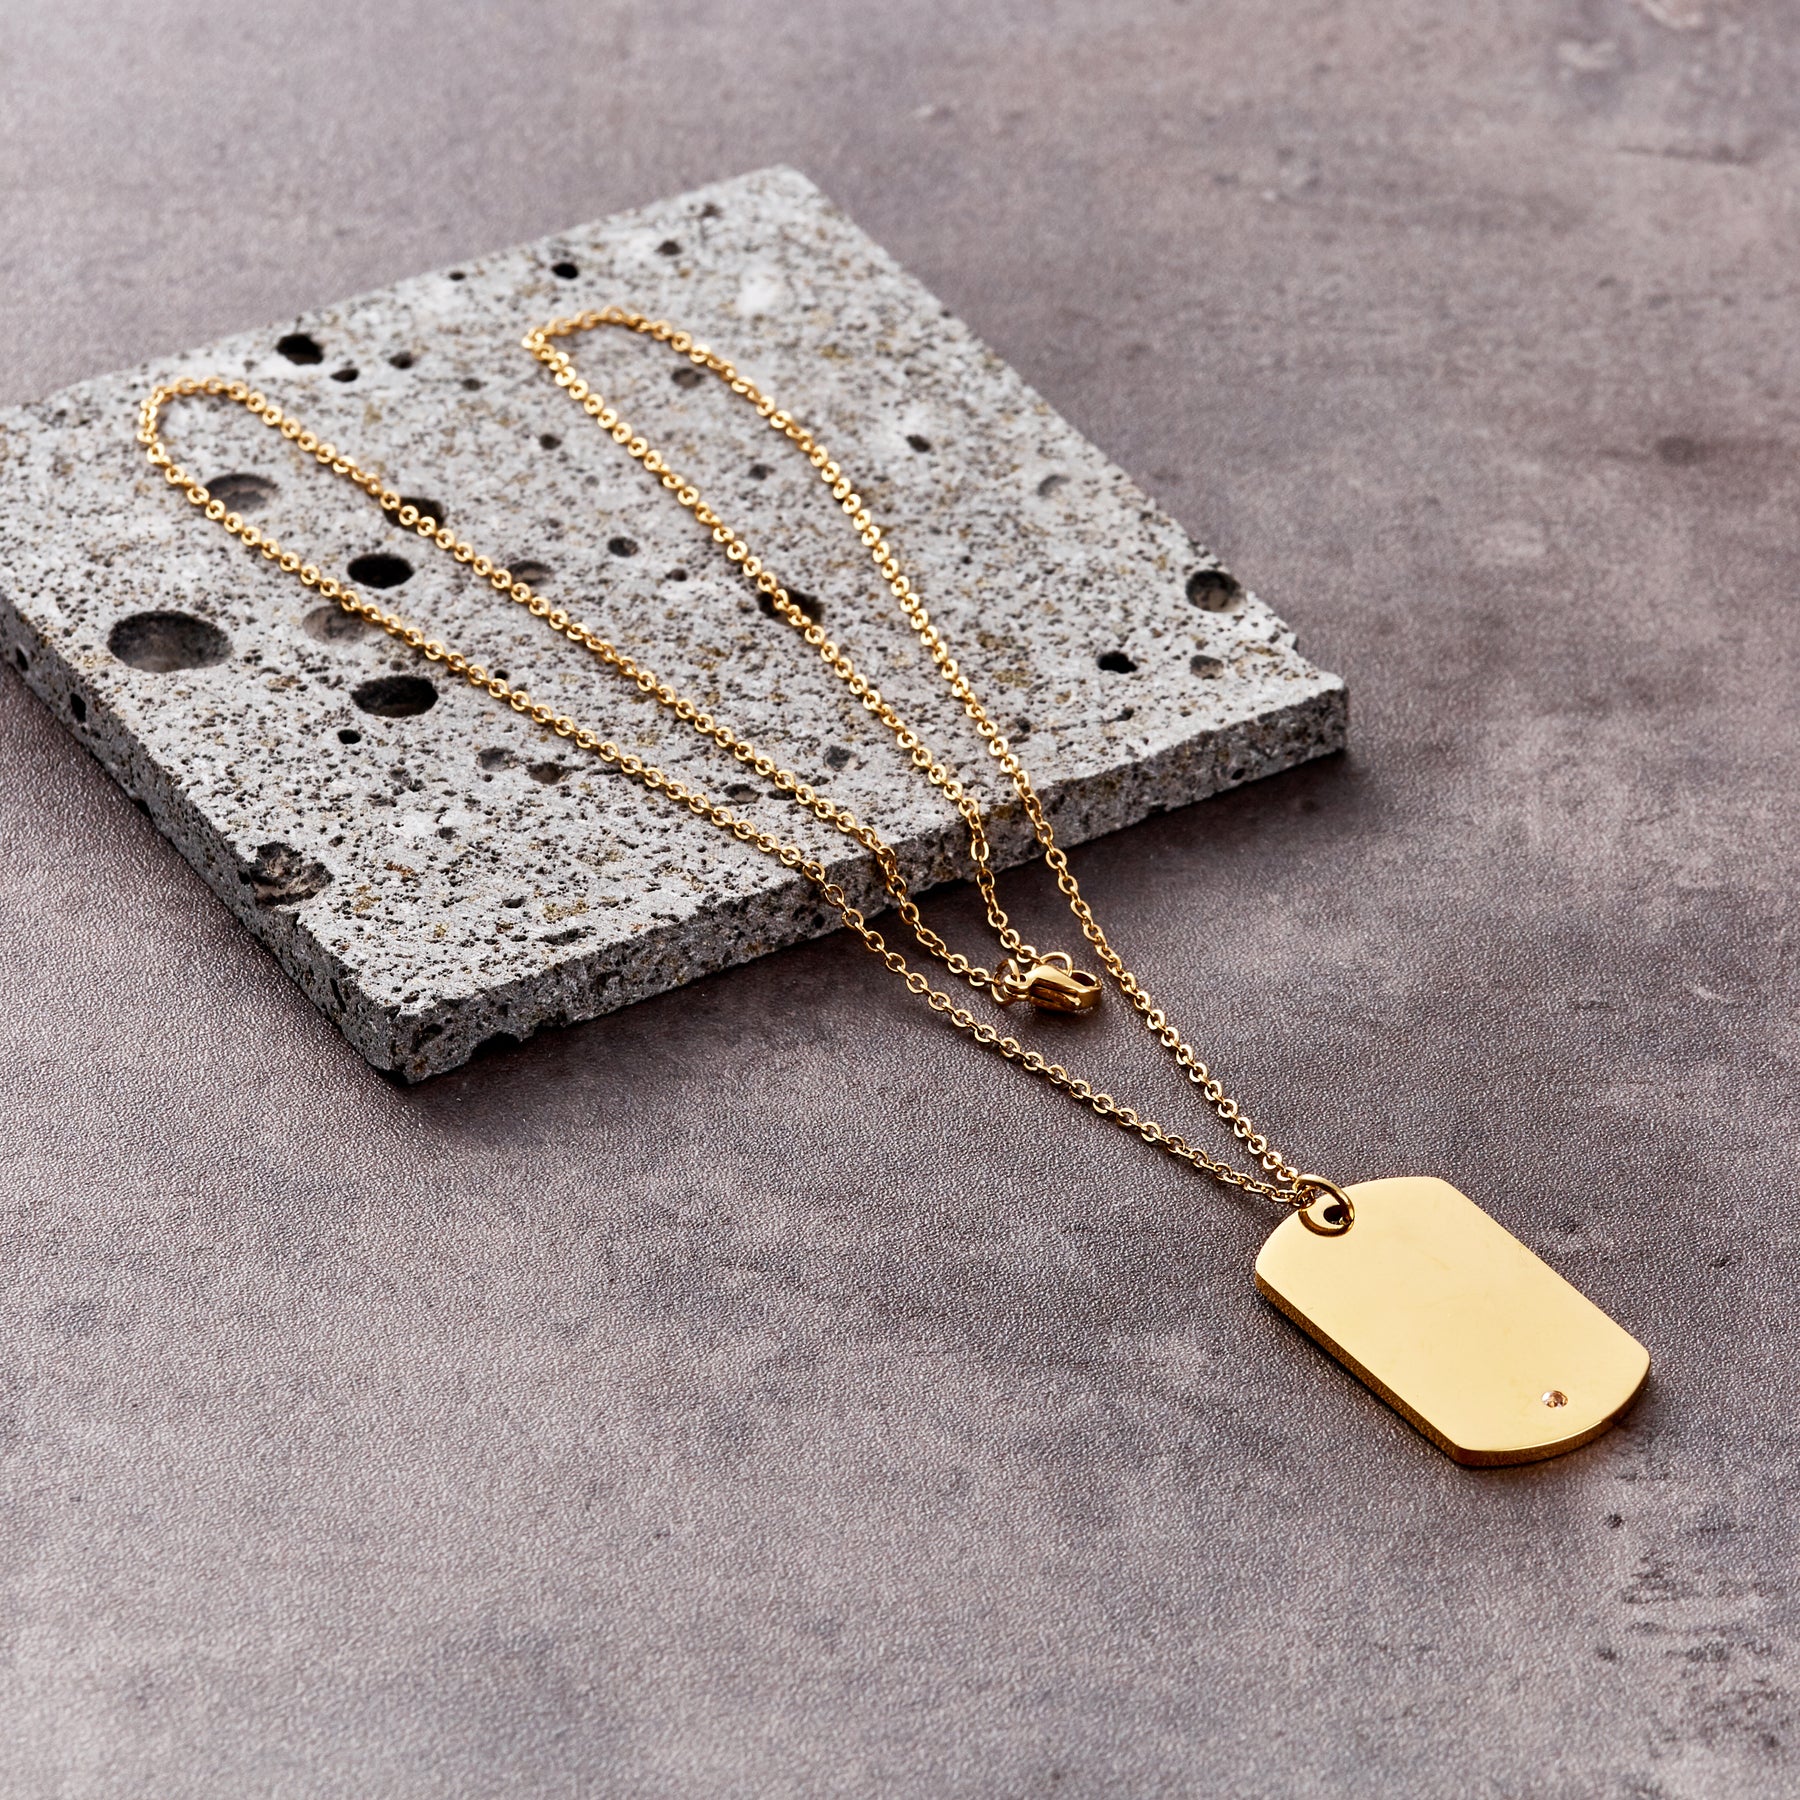 Premium Tag Necklace Set (24kt Gold) – RoseGold & Black Pty Ltd